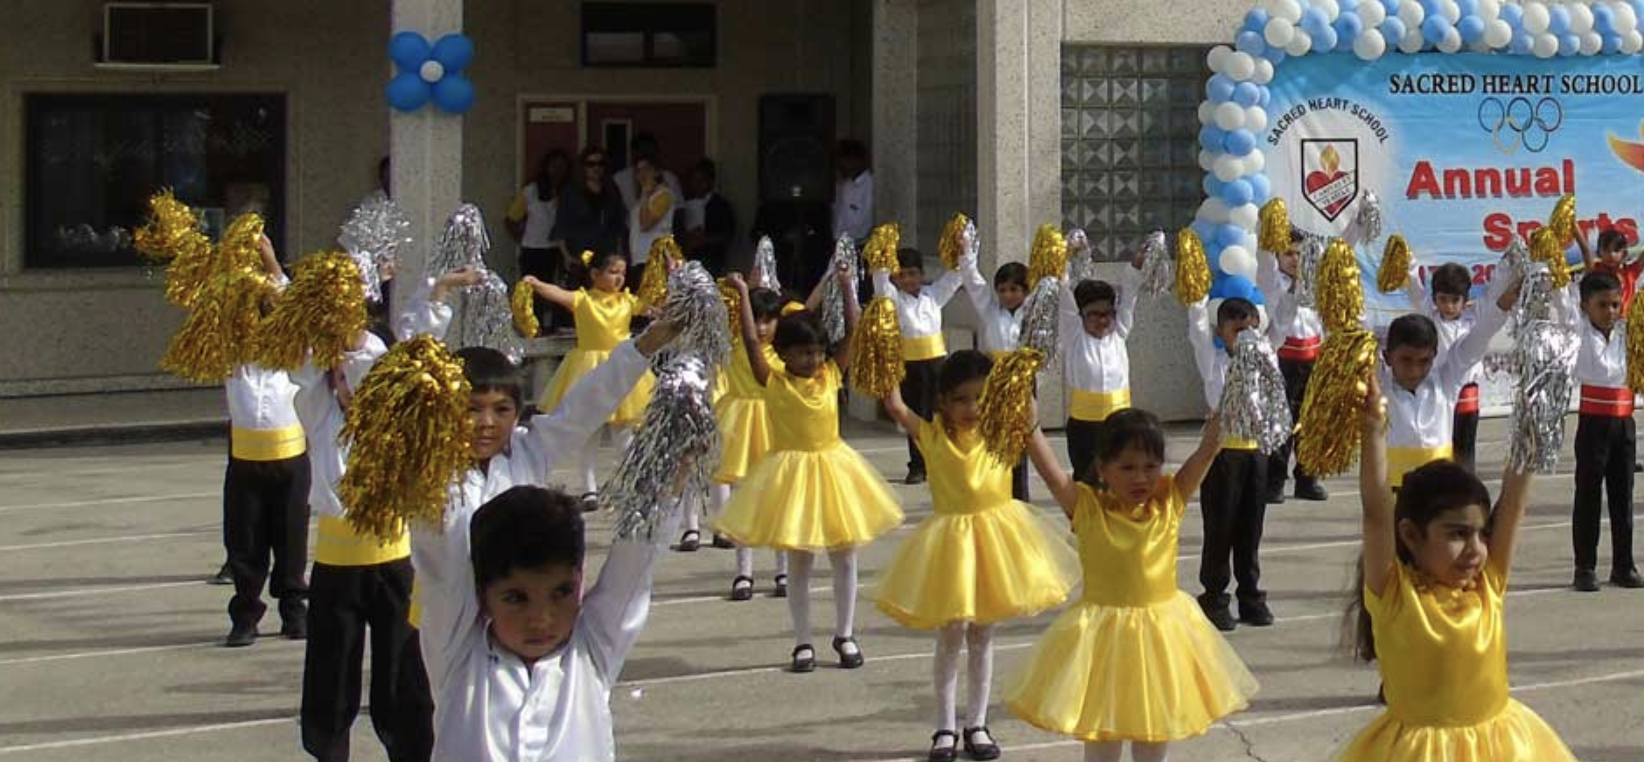 Les élèves de l'école du Sacré-Coeur, à Manama (Bahreïn), sont de diverses religions | © shsbahrain.com